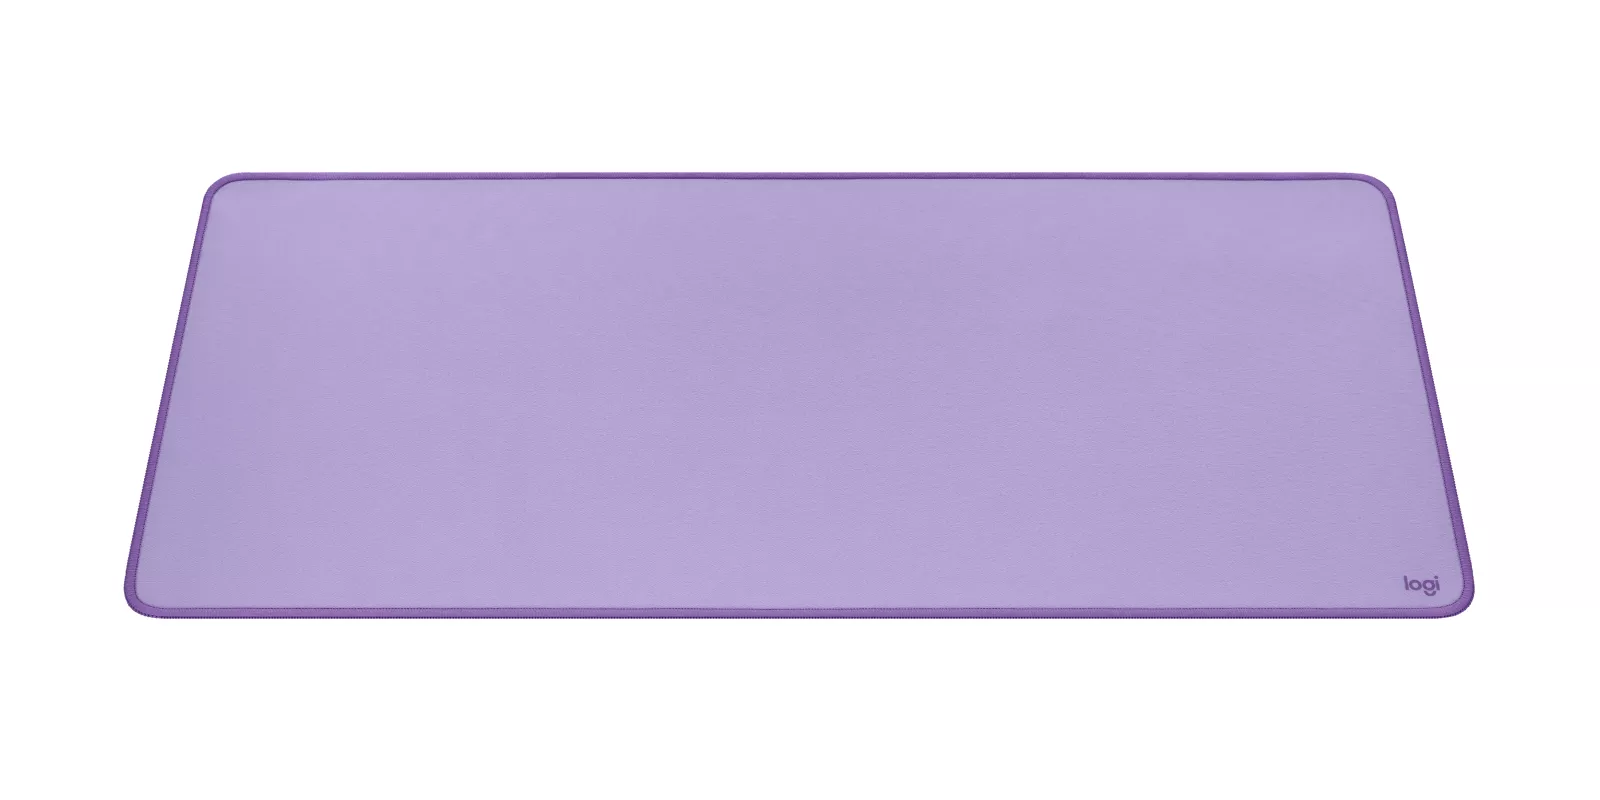 Vente LOGITECH Desk Mat Studio Series Mouse pad lavender Logitech au meilleur prix - visuel 2